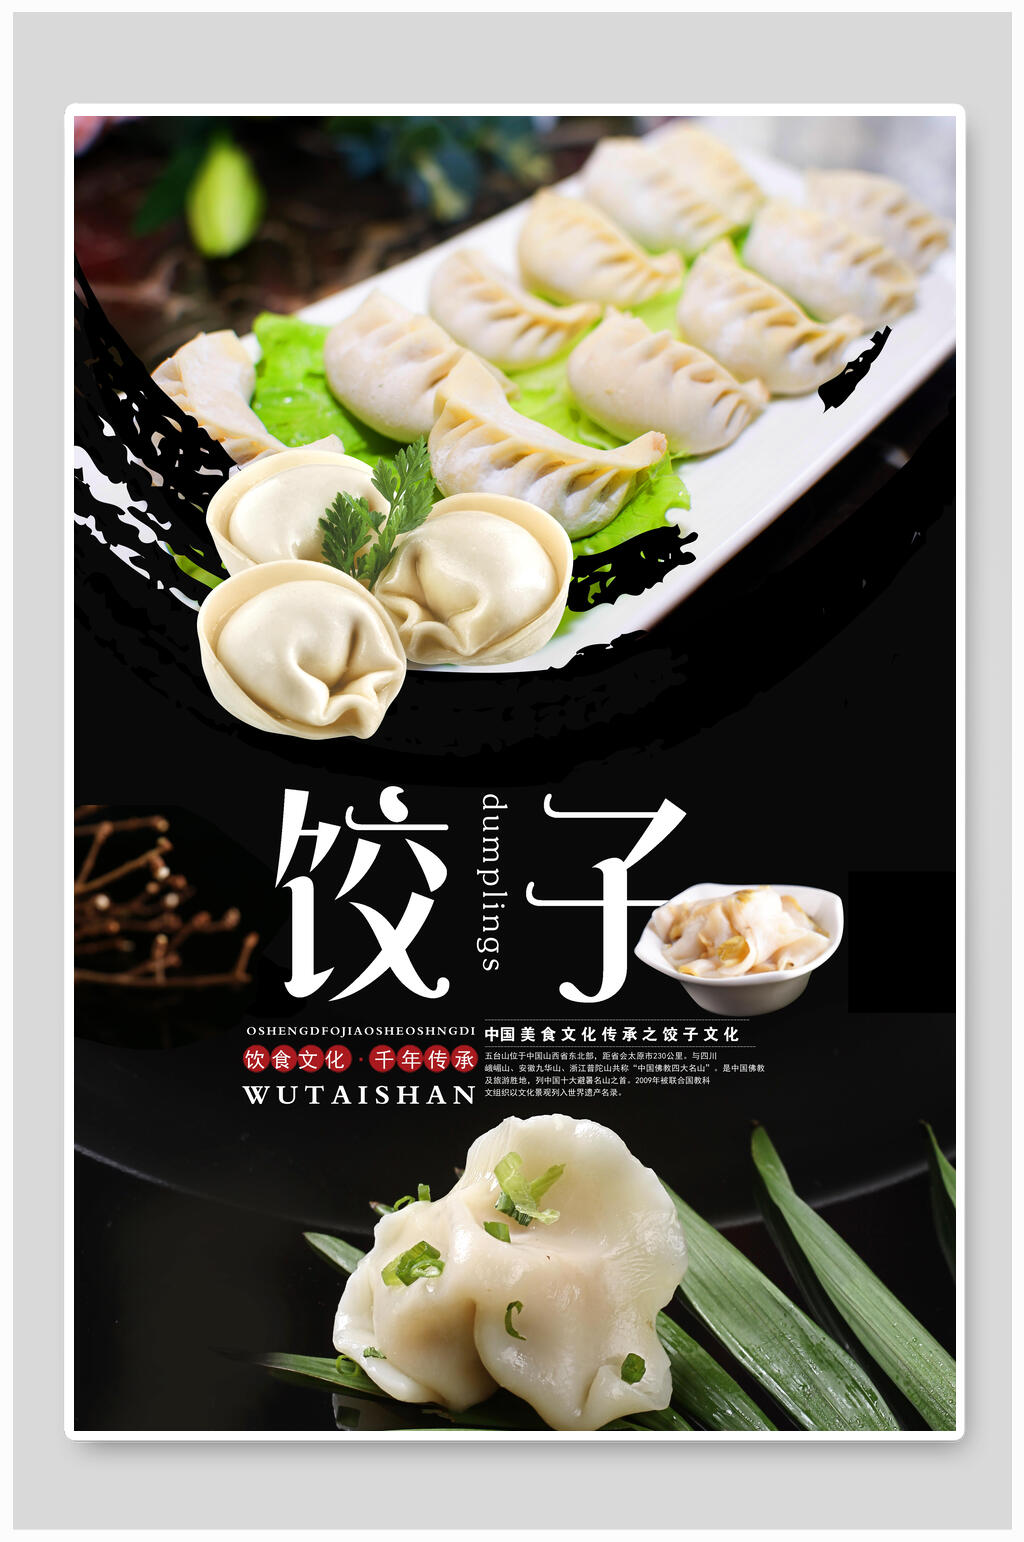 饺子宣传海报图片大全图片